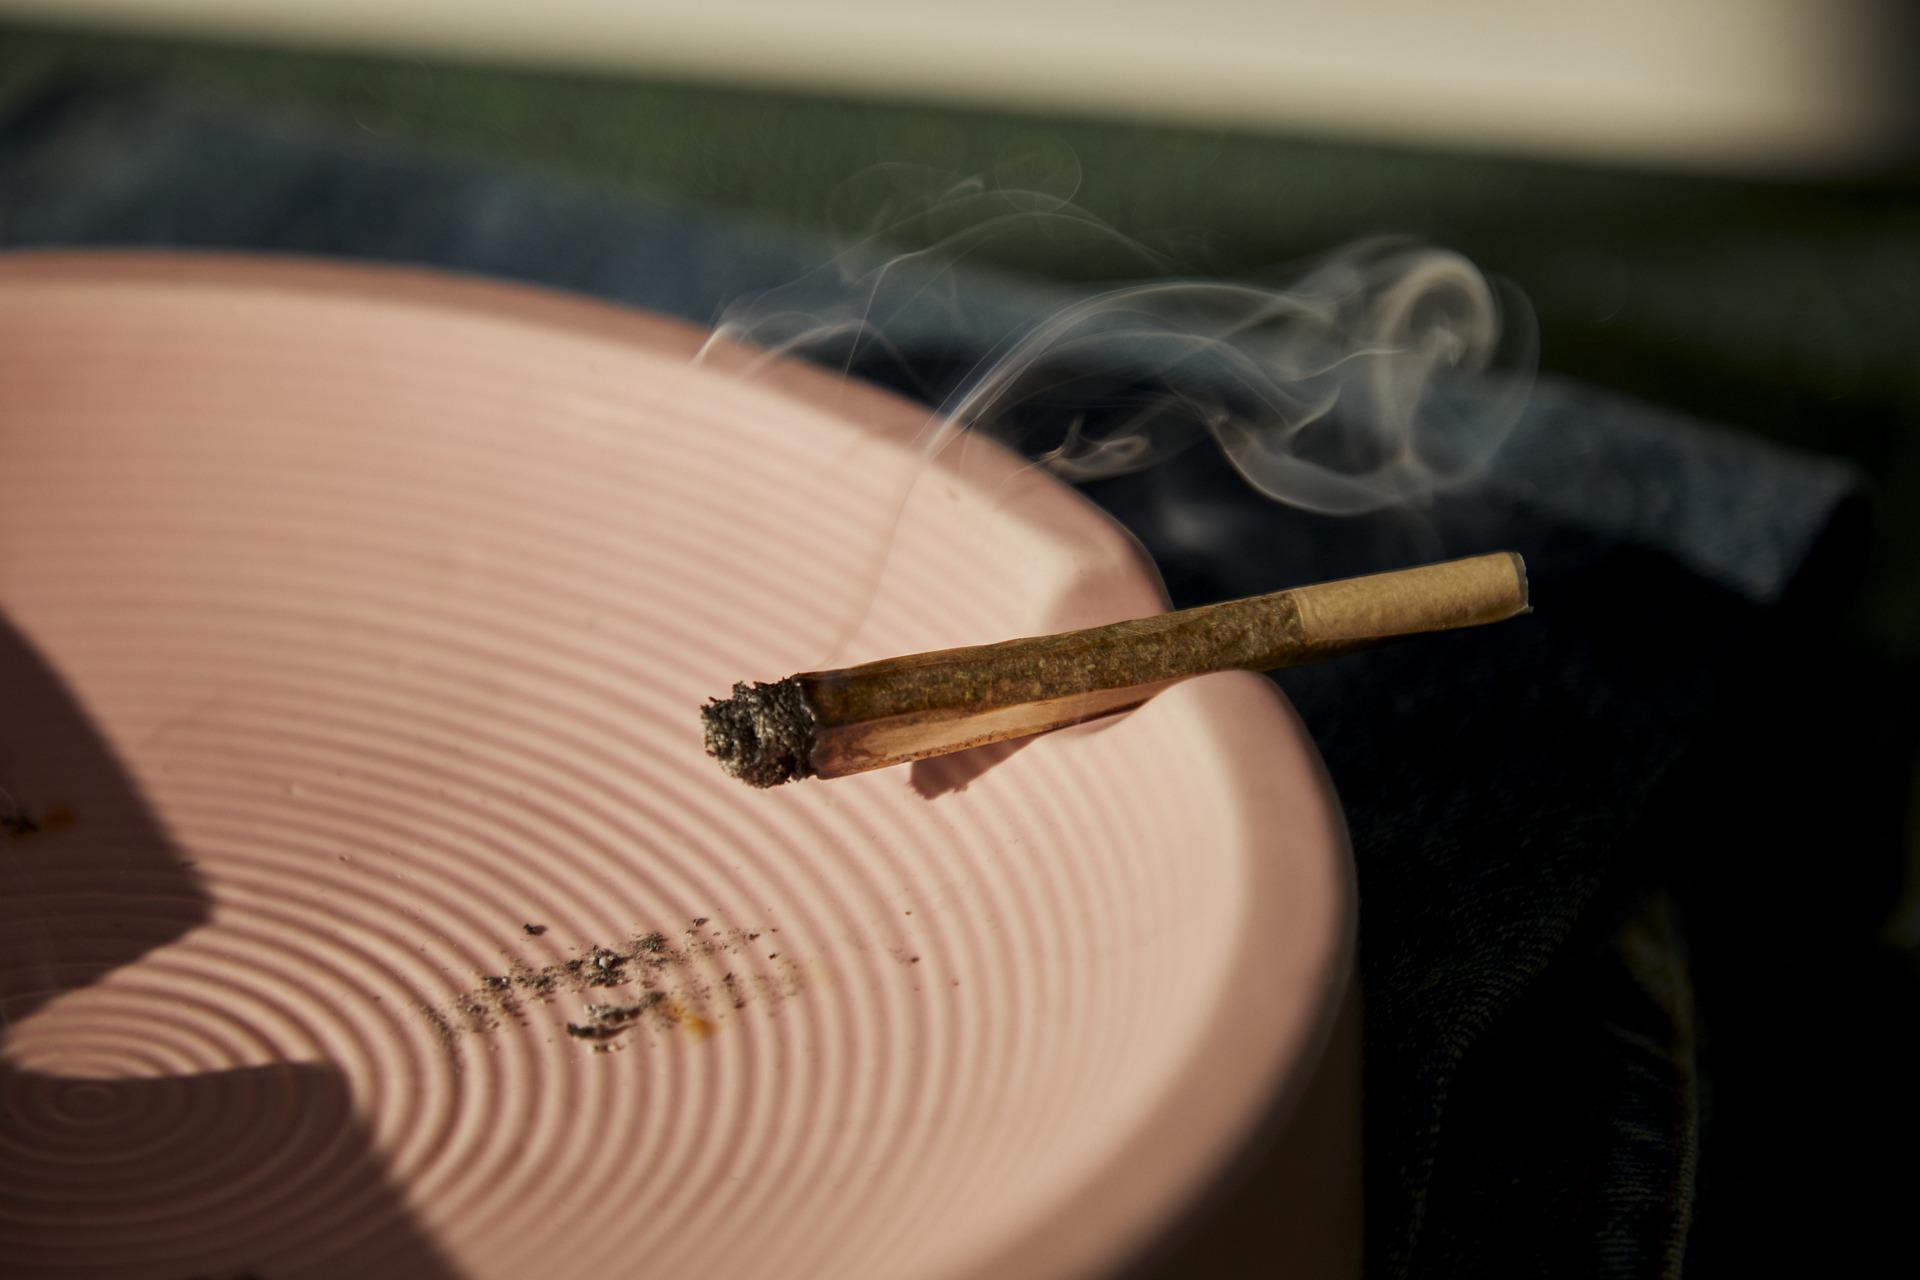 Florida Approves Smoking Medical Marijuana